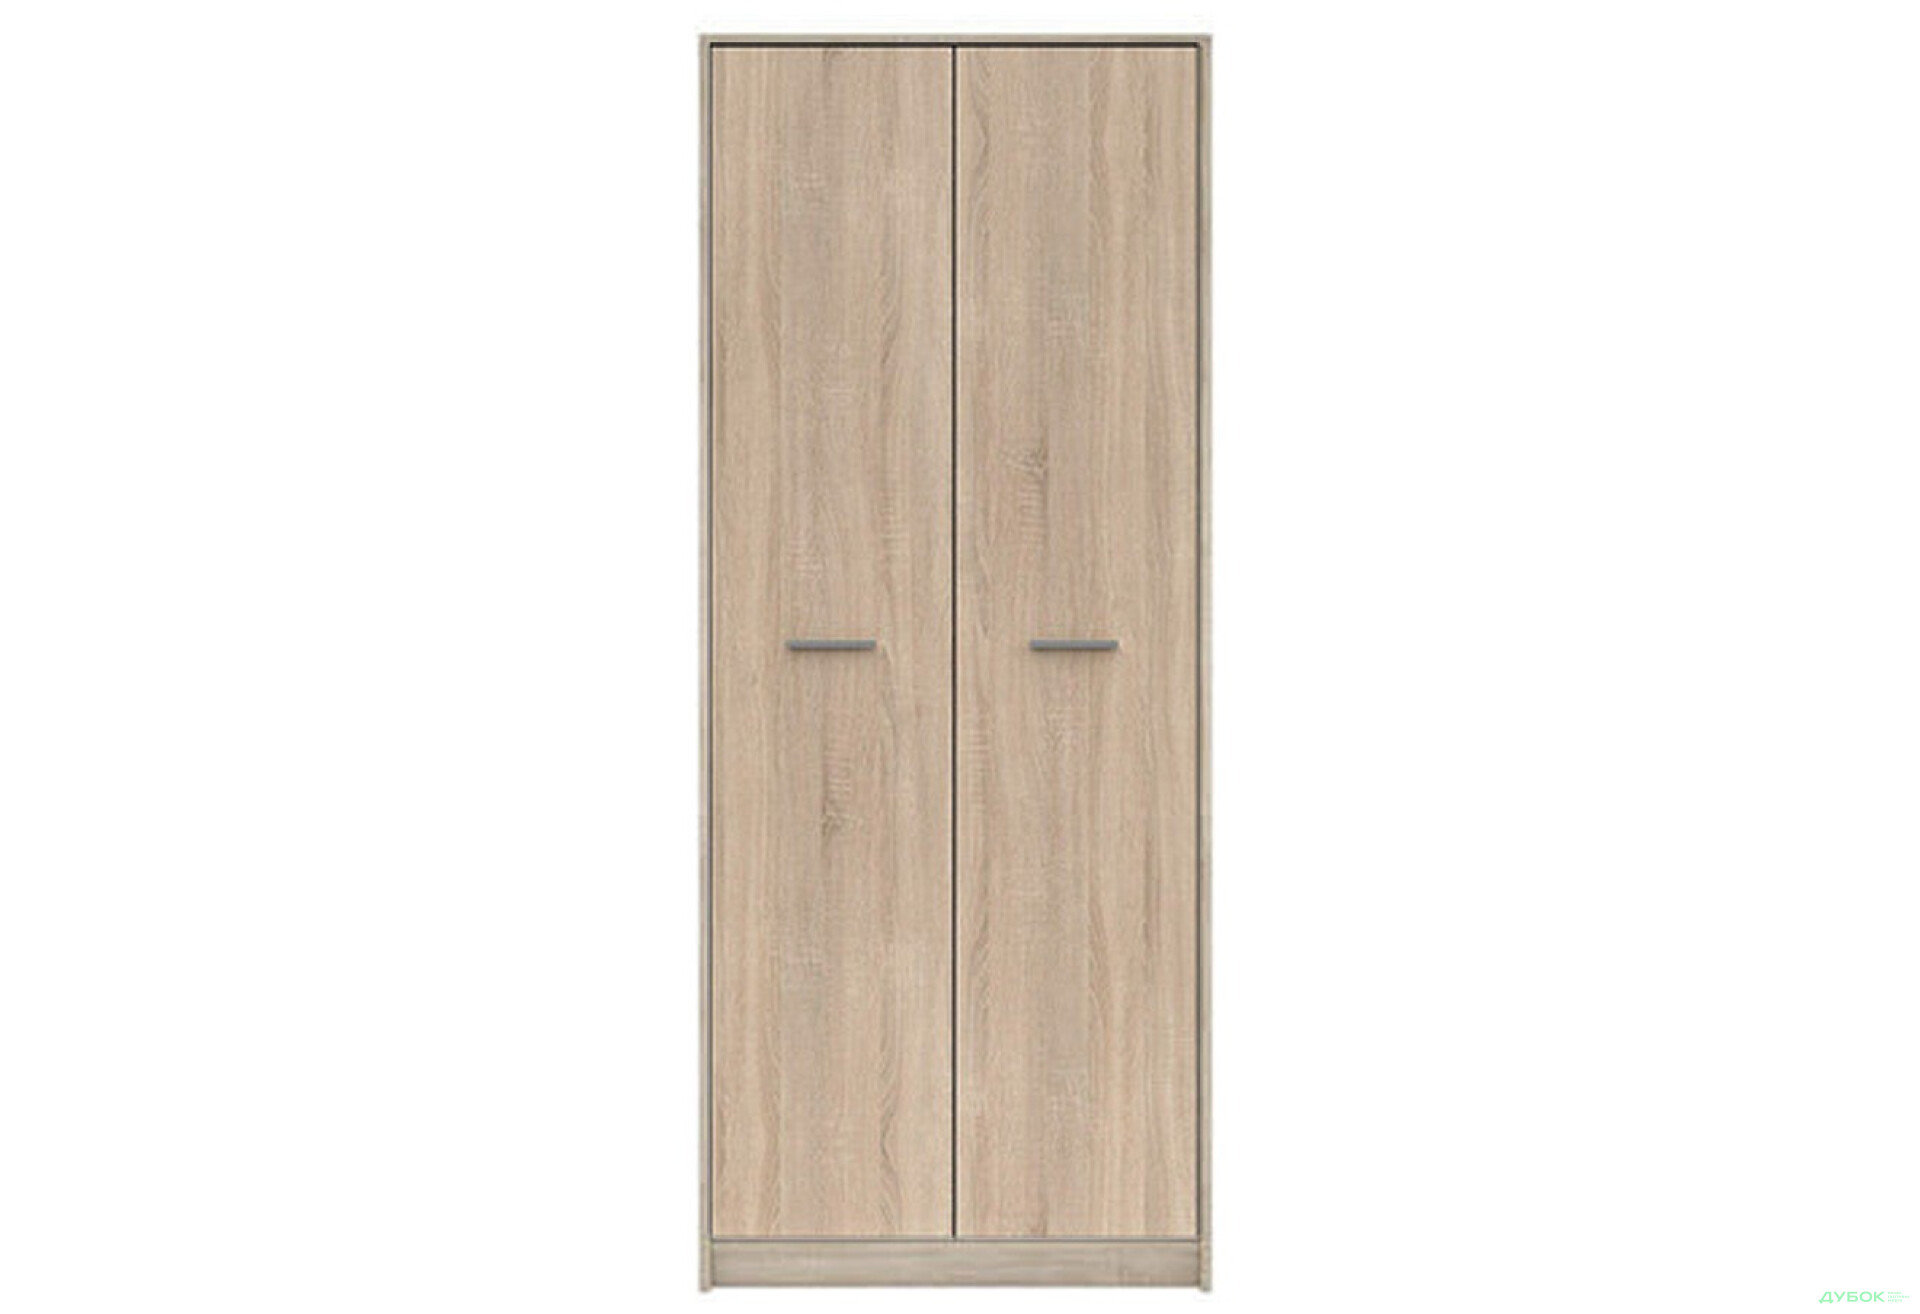 Фото 1 - Шкаф комбинированный Gerbor холдинг Непо 2-дверный 80 см Дуб сонома